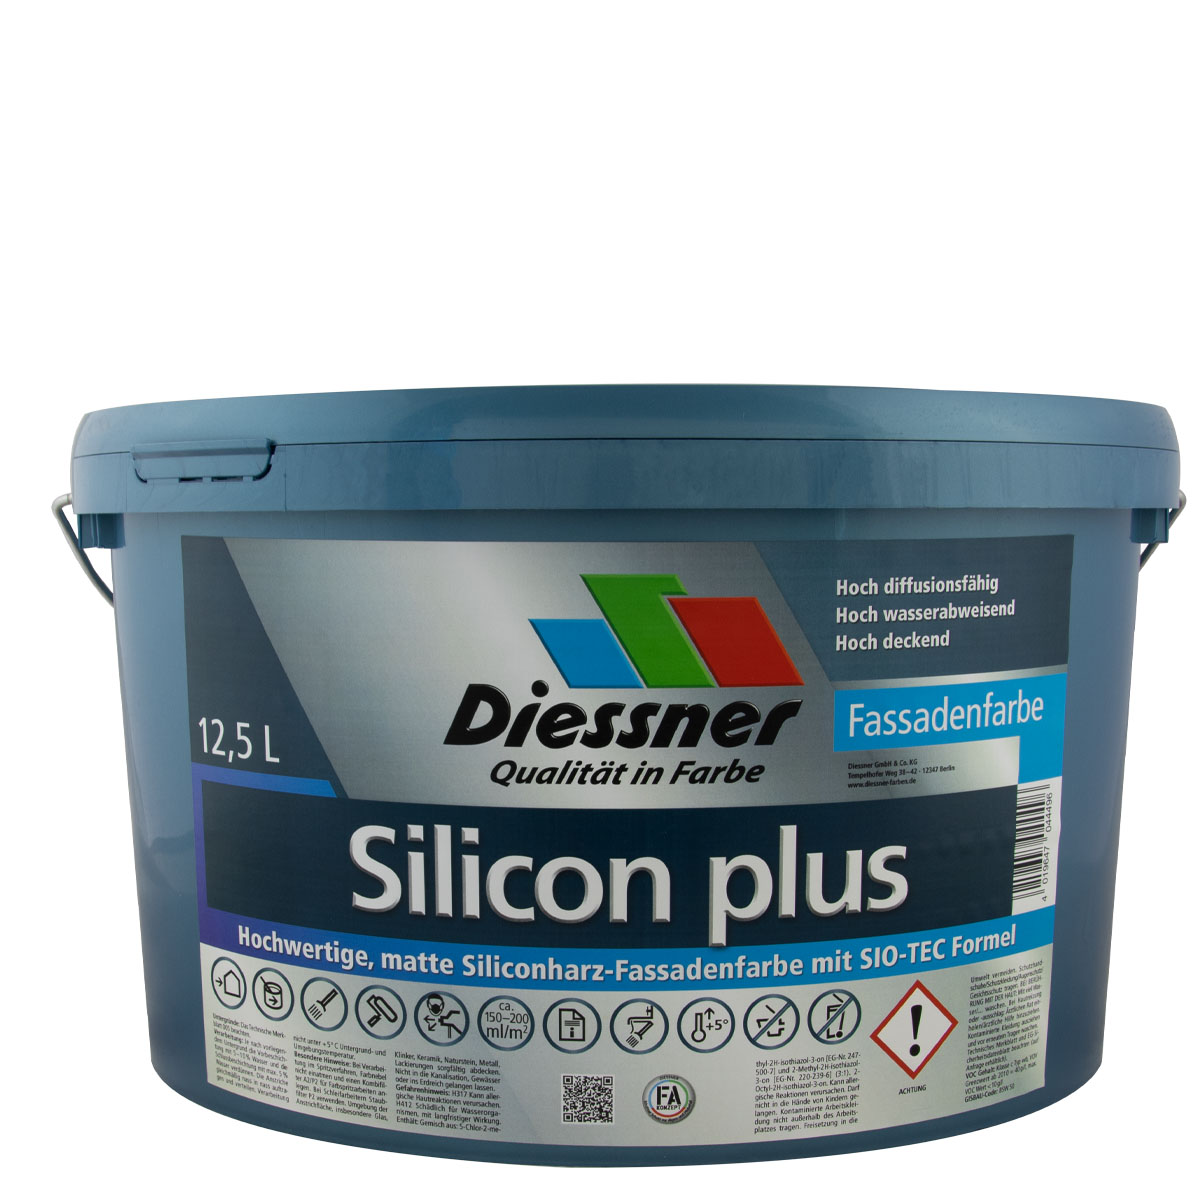 Diessner Silicon Plus 12,5L weiß Fassadenfarbe